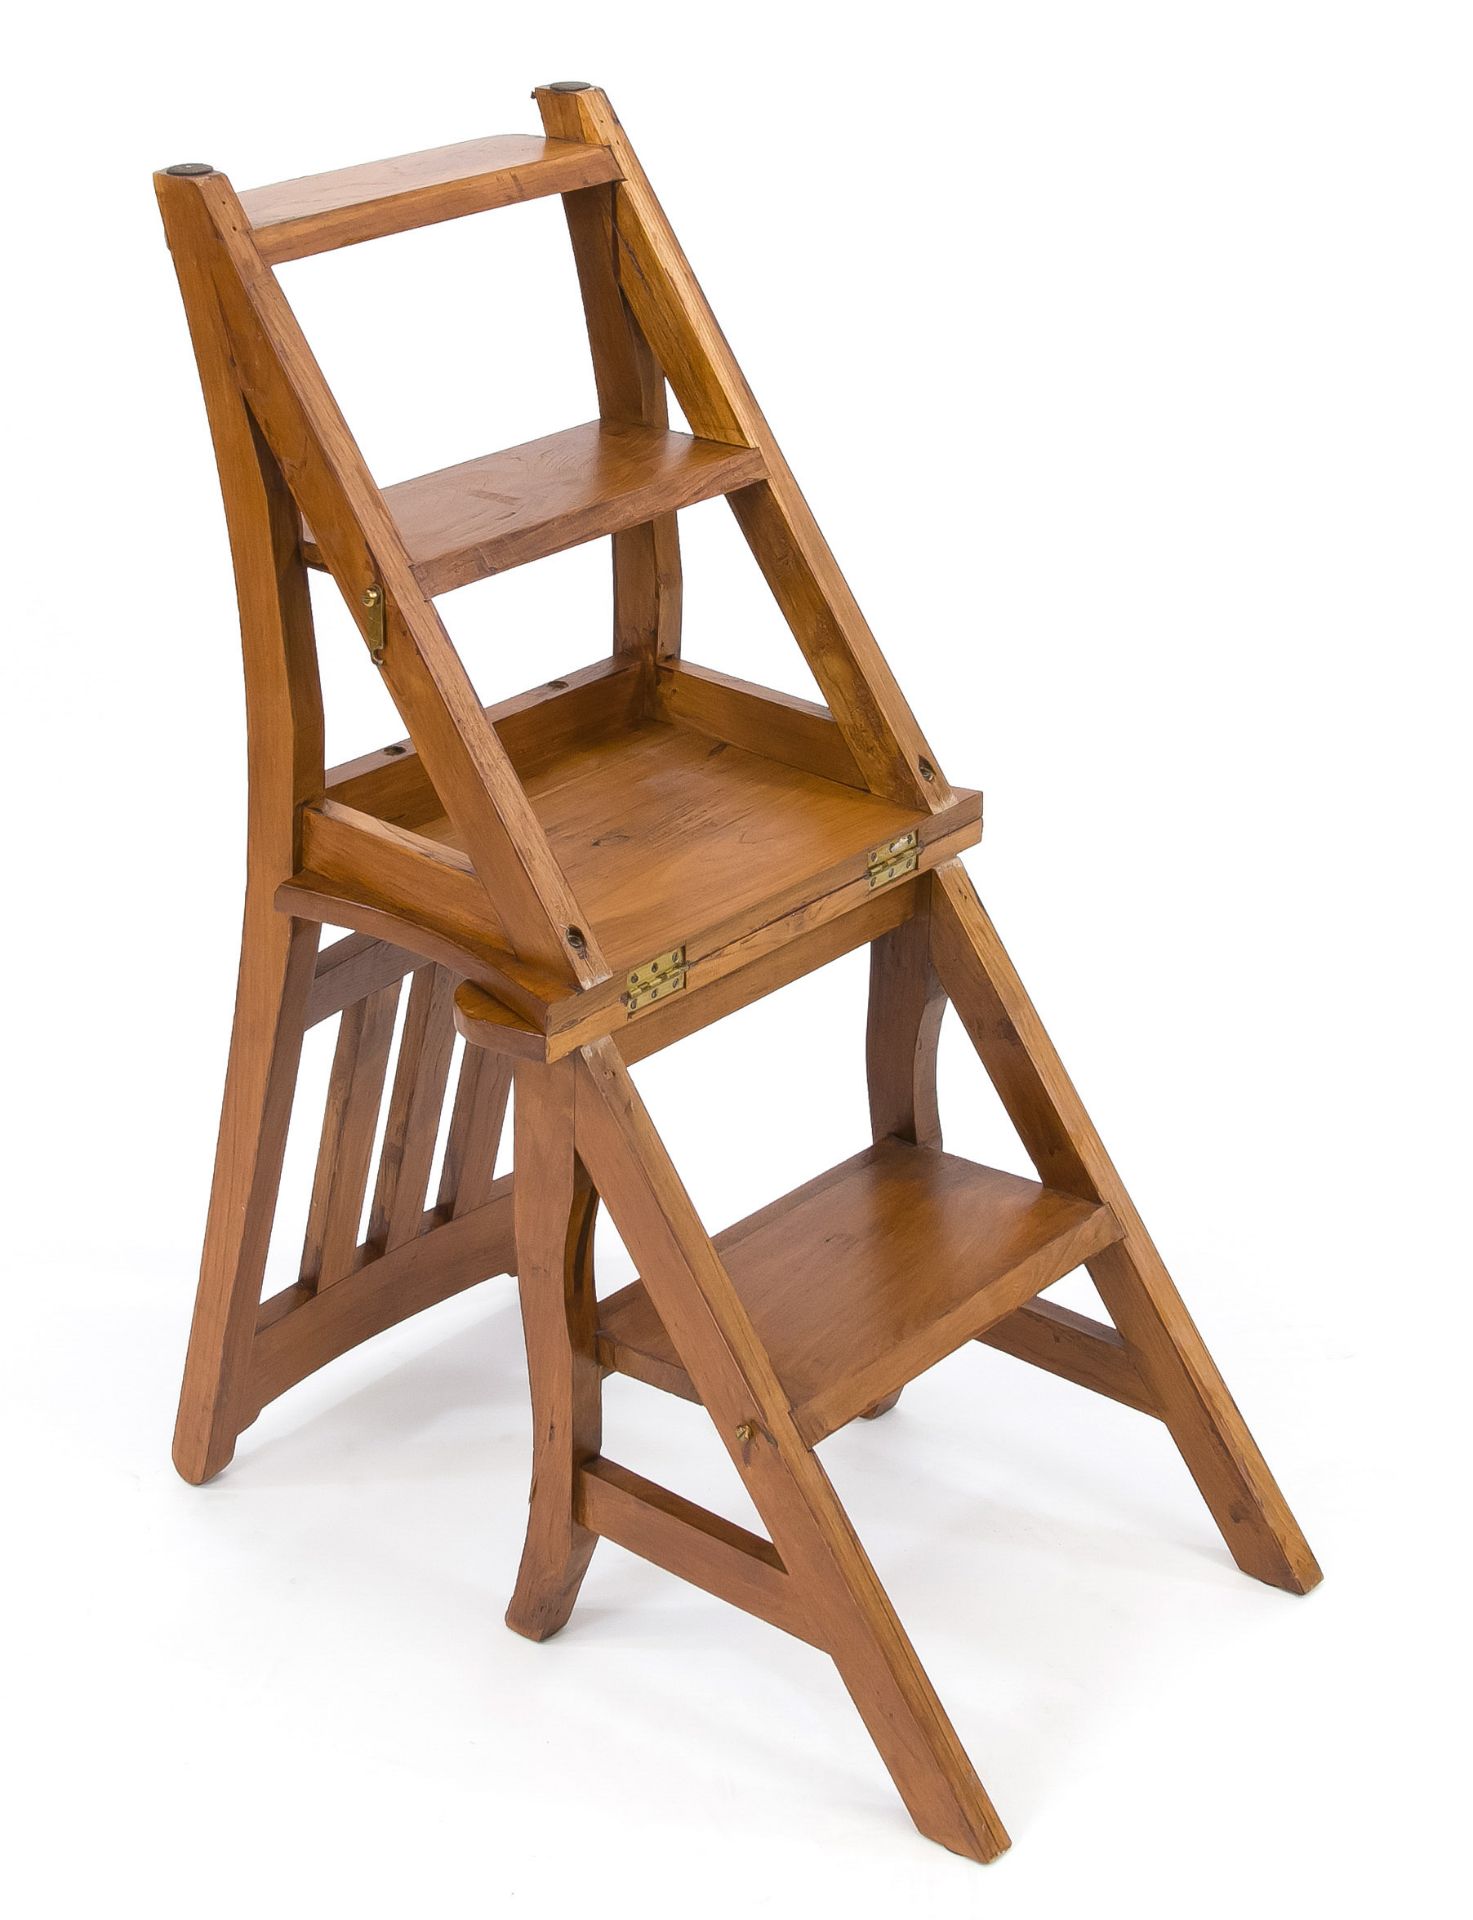 Leiterstuhl, 20. Jh., Rüster massiv, klappbarer Stuhl als Leiter nutzbar, 85 x 43 x 37 cm - Image 2 of 2